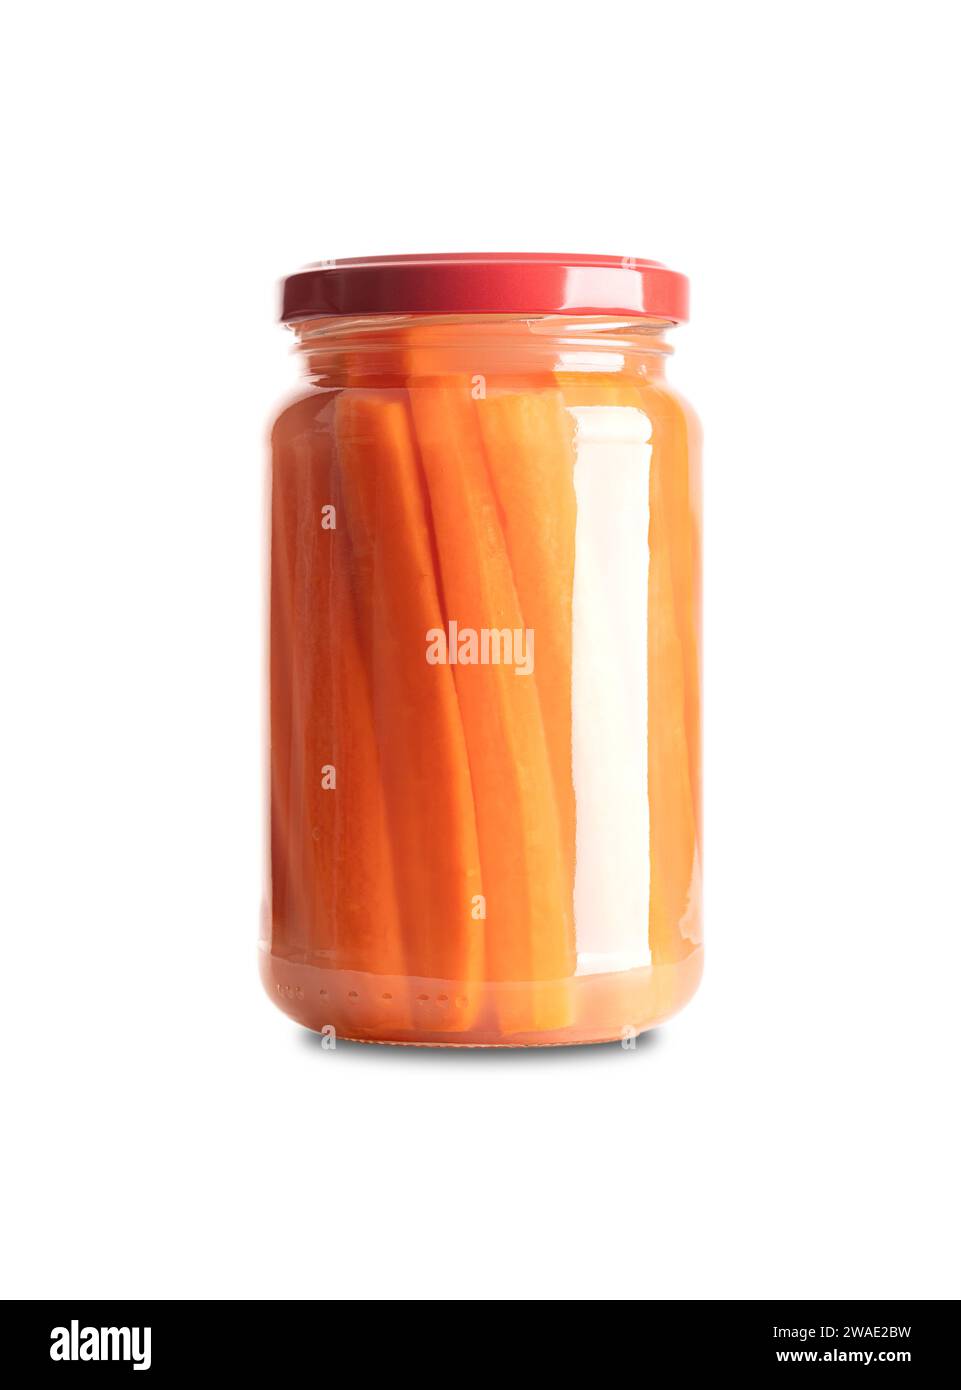 Bâtonnets de carottes, carottes fermentées maison, dans un bocal en verre avec couvercle. Carottes coupées en bâtonnets, fermentées par des bactéries lactiques. Banque D'Images